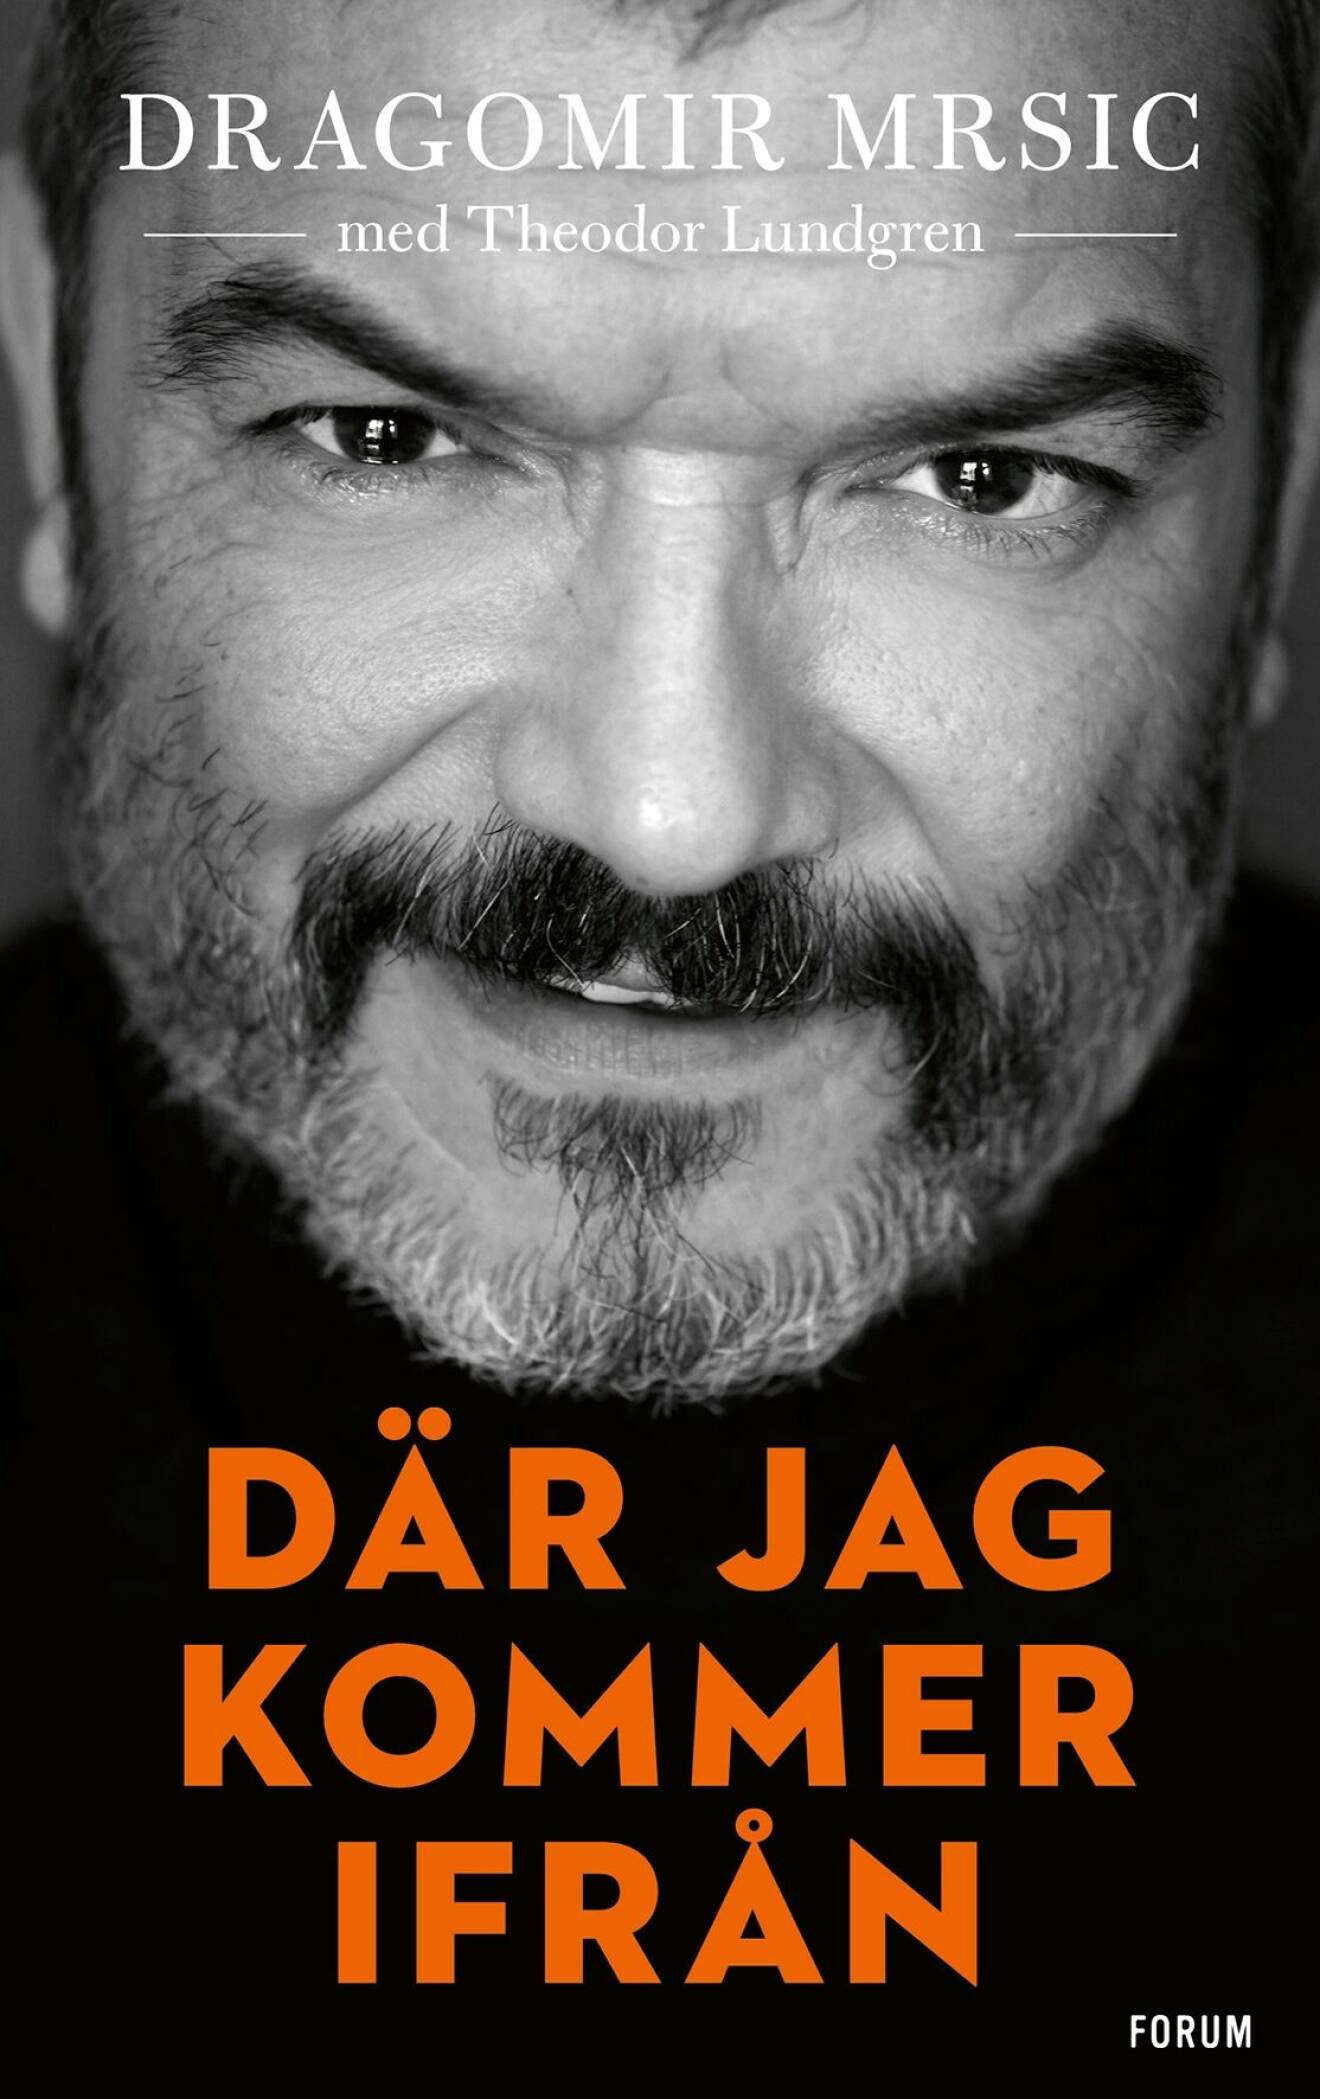 Bokomslaget till självbiografin Där jag kommer ifrån, av Dragomir Mrsic.